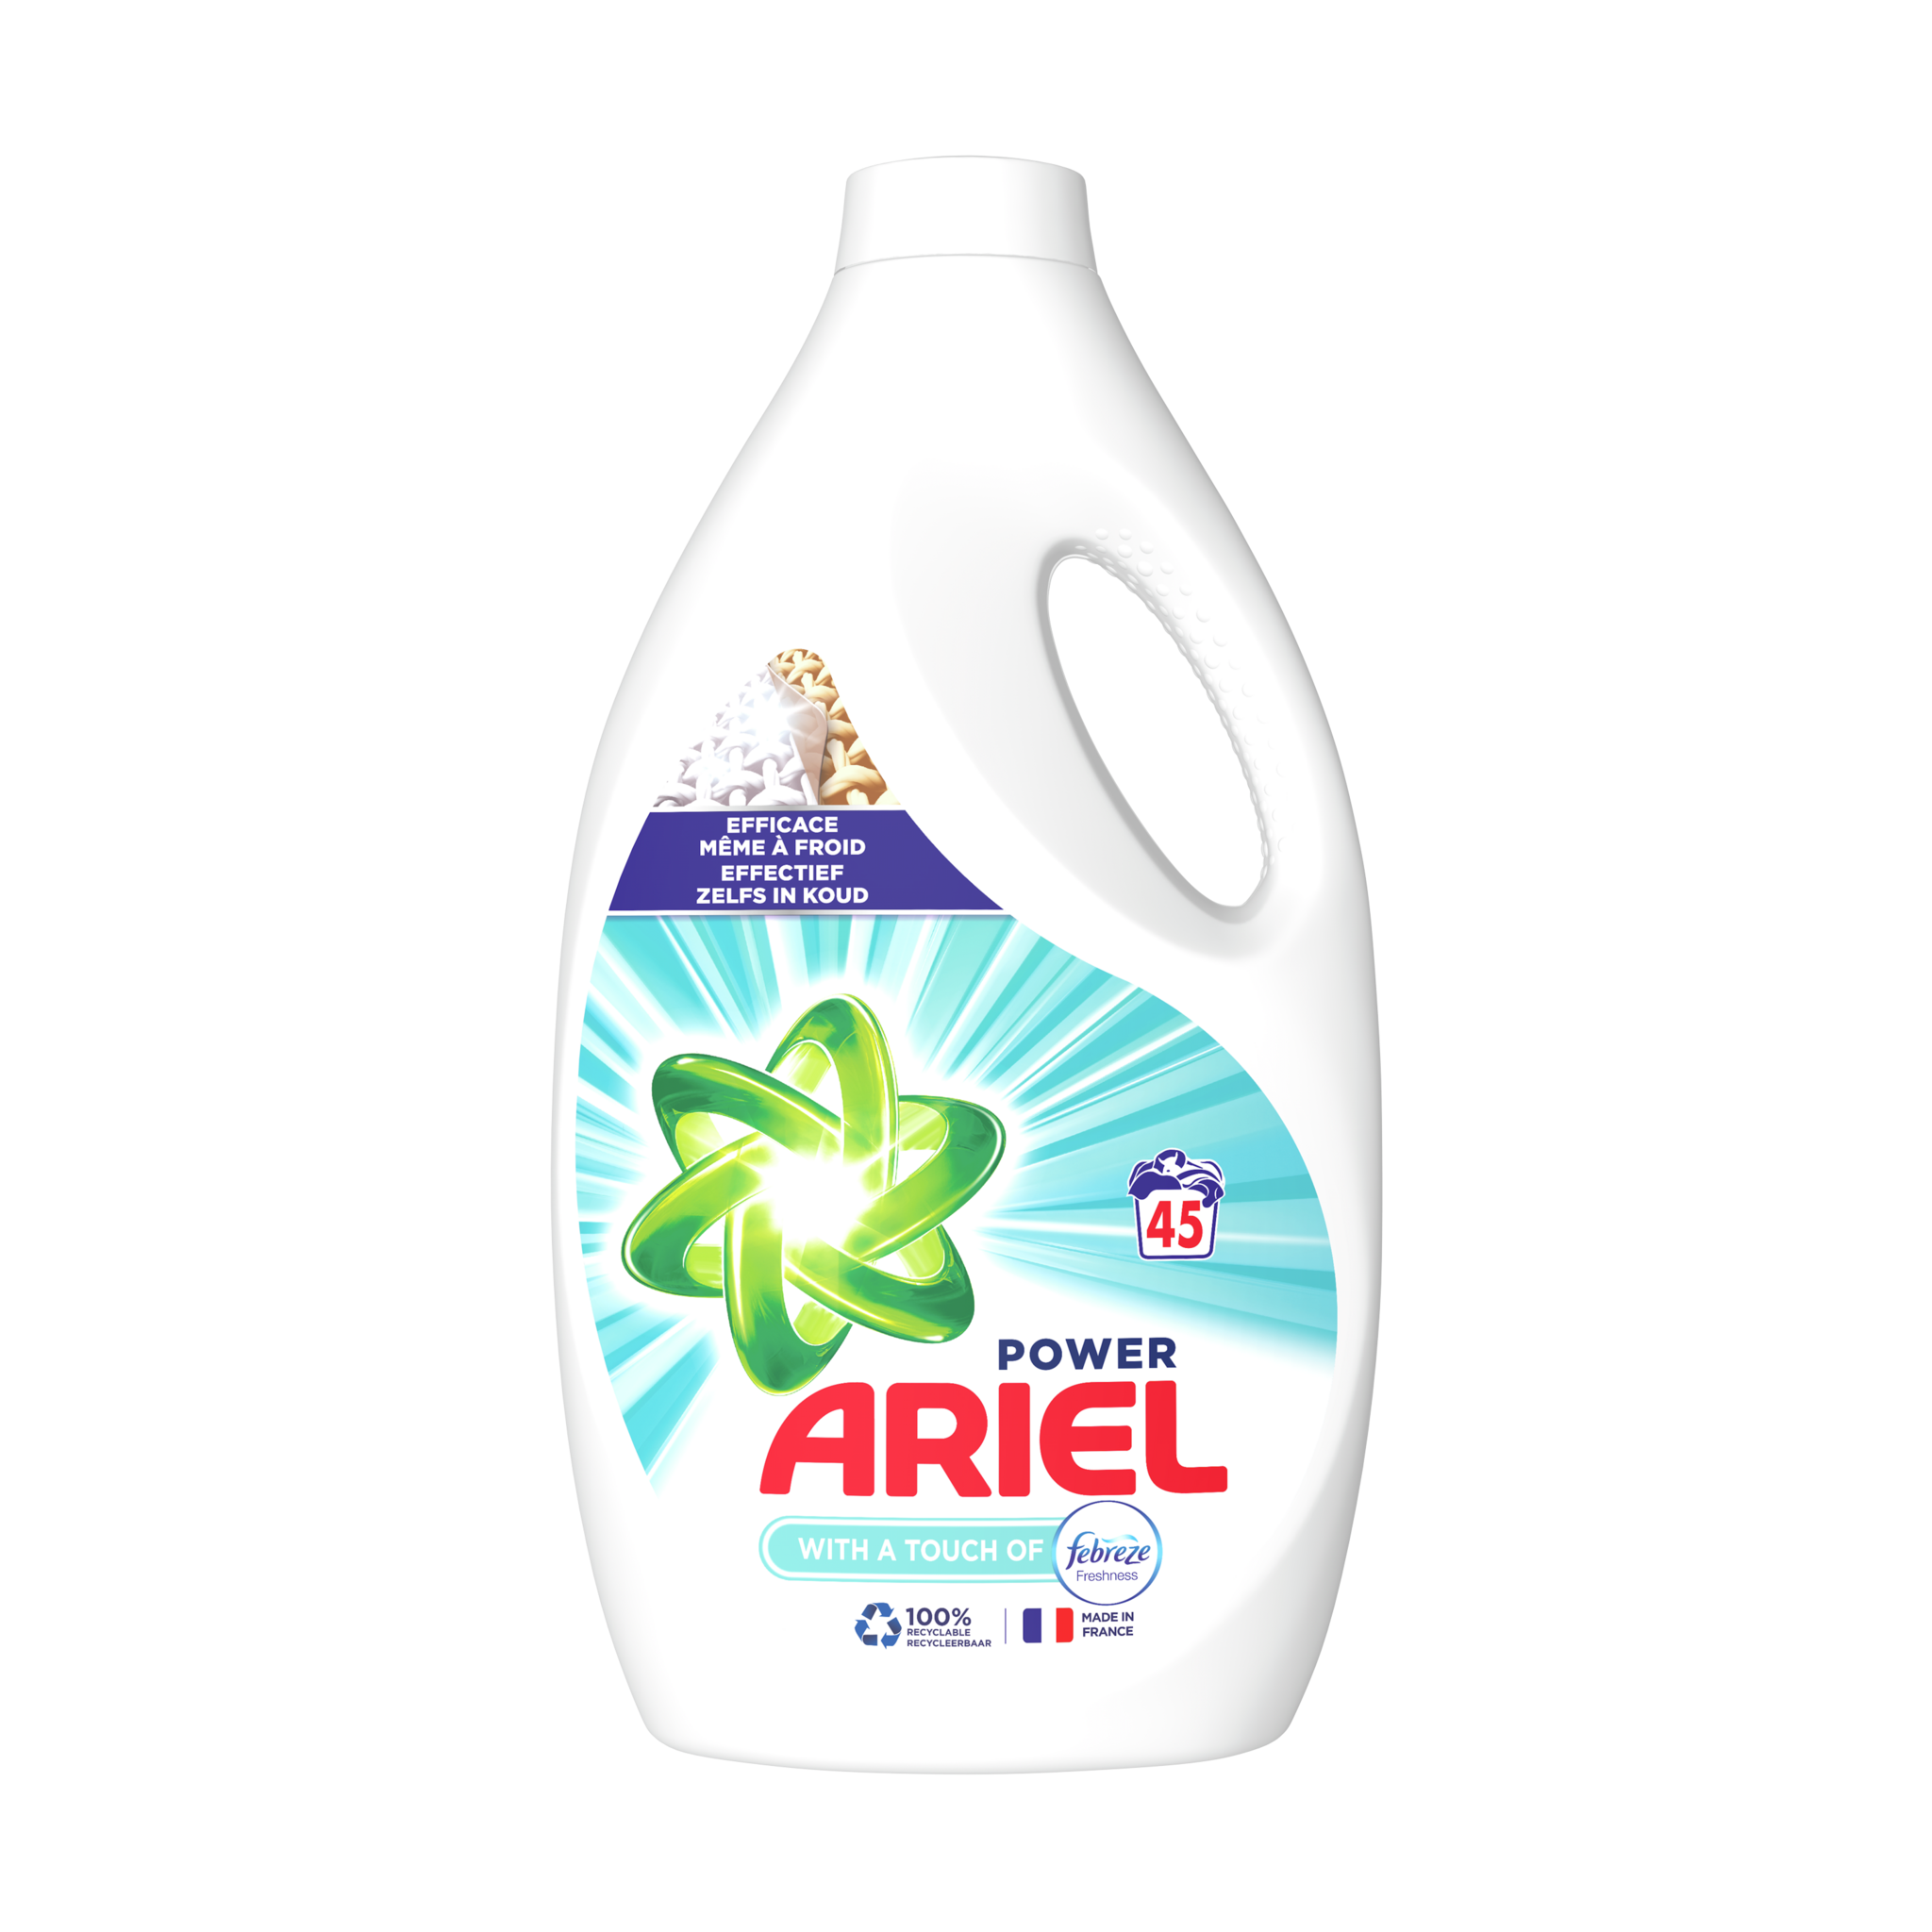 Ariel - Lessive liquide power peaux sensibles 31 lavages - Supermarchés  Match